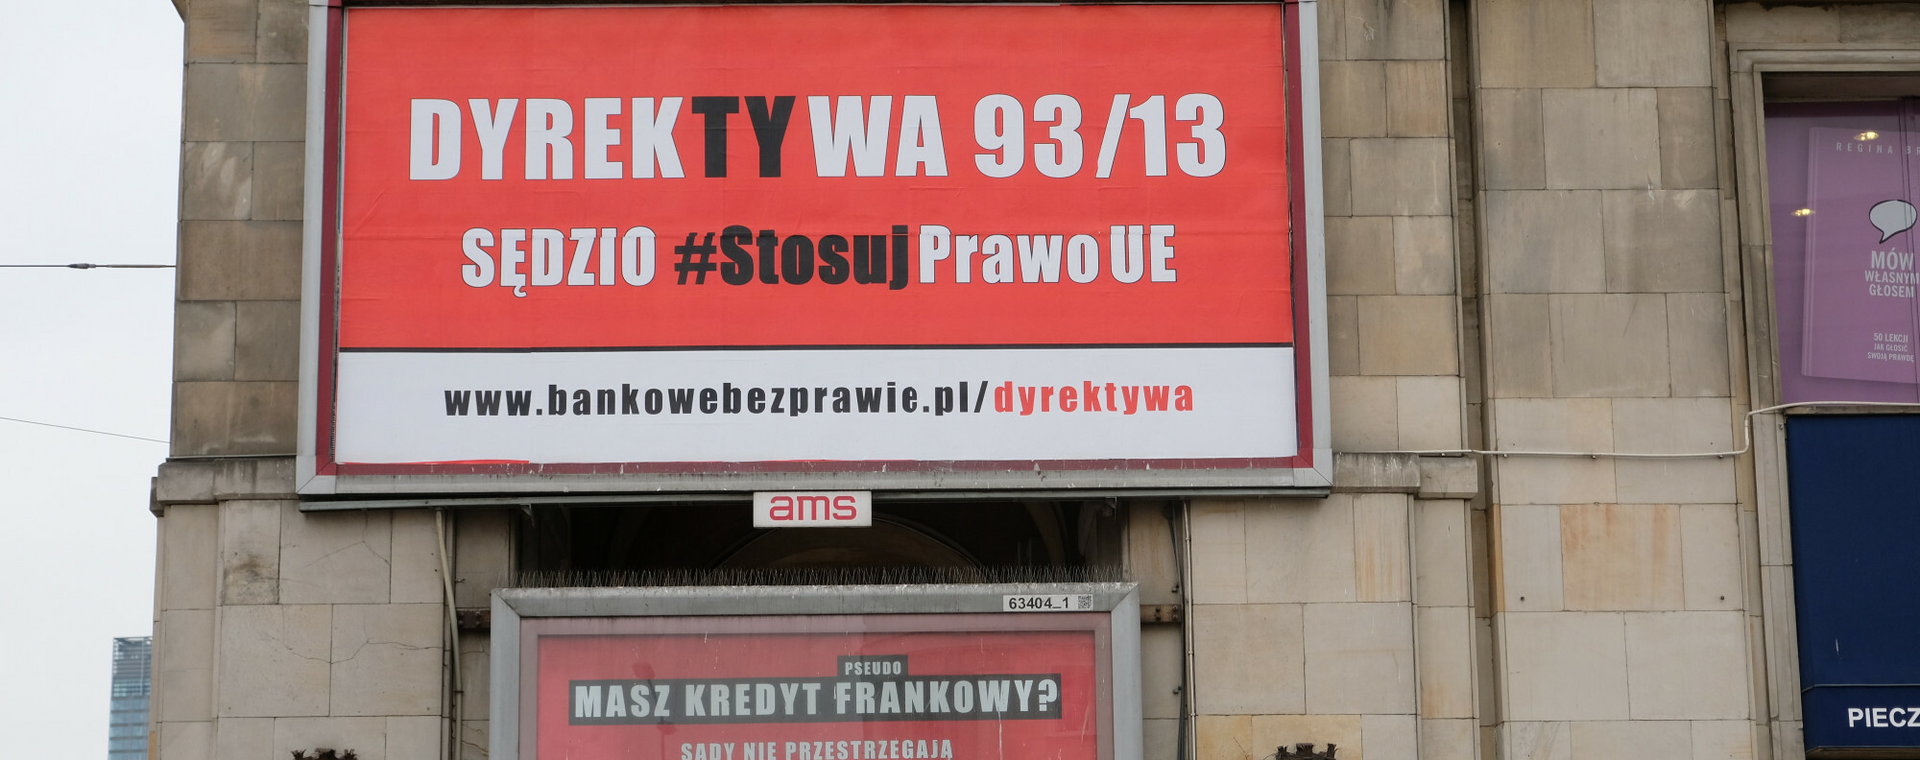 Akcja billboardowa zorganizowana przez stowarzyszenie Stop Bankowemu Bezprawiu